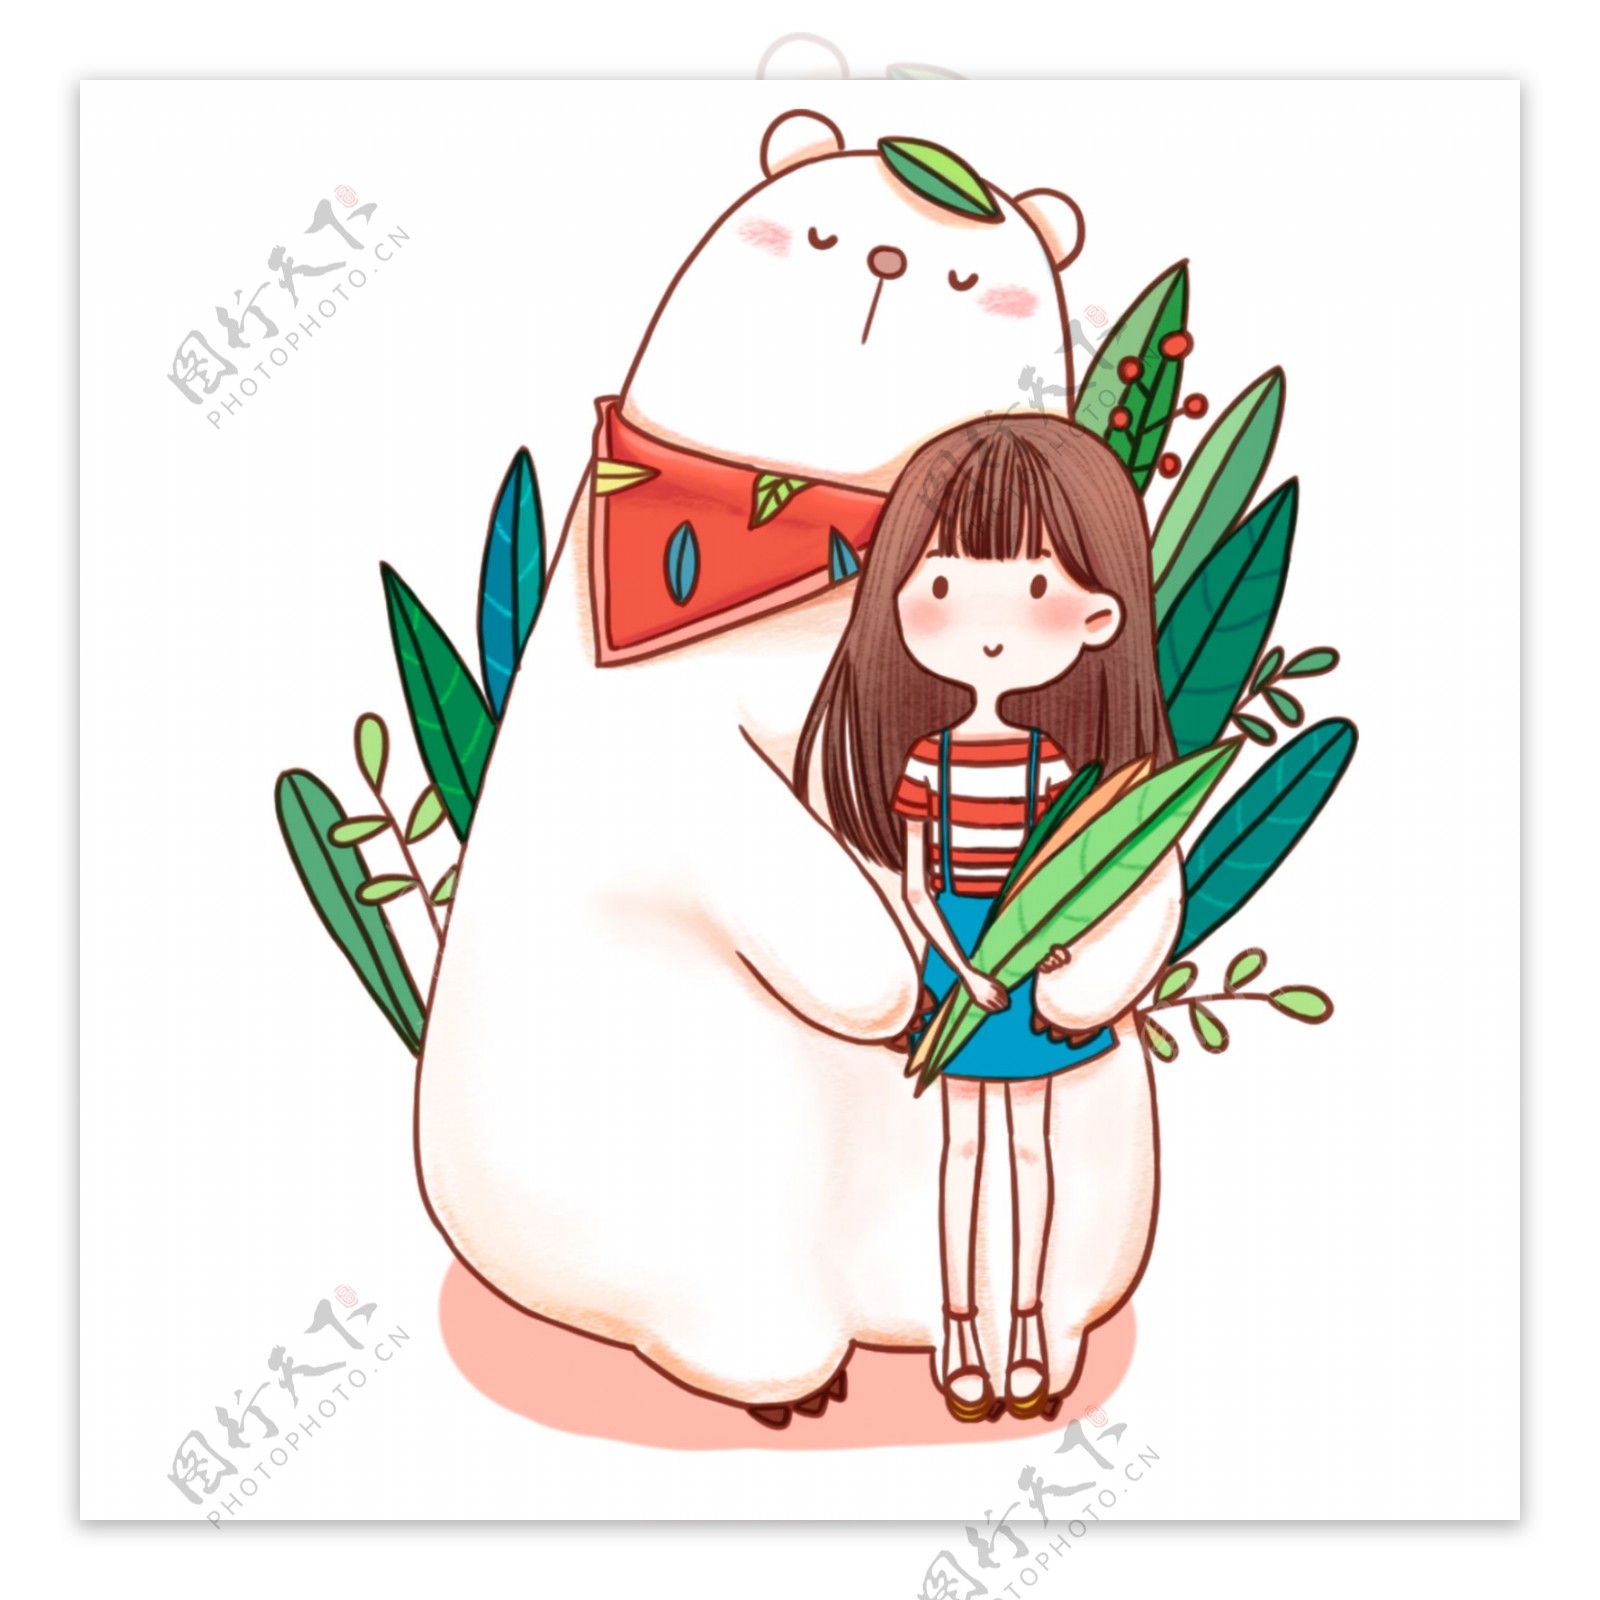 卡通彩绘白熊和女孩插画设计